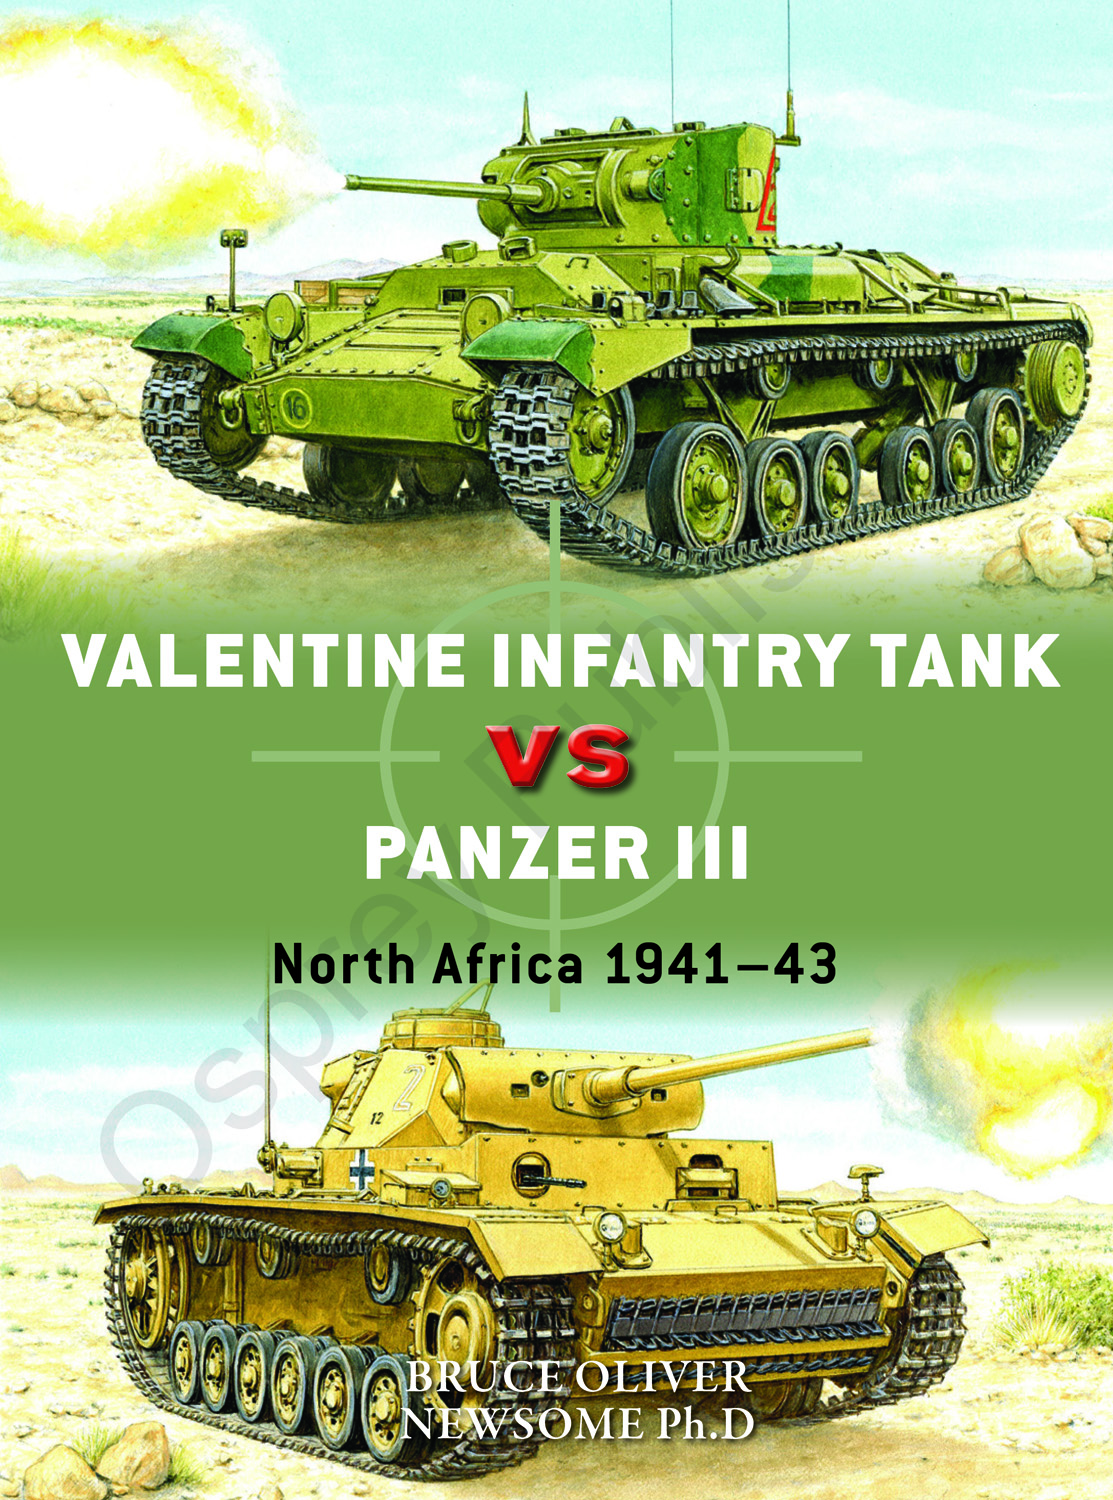 Valentine Infantry Tank versus Panzer III